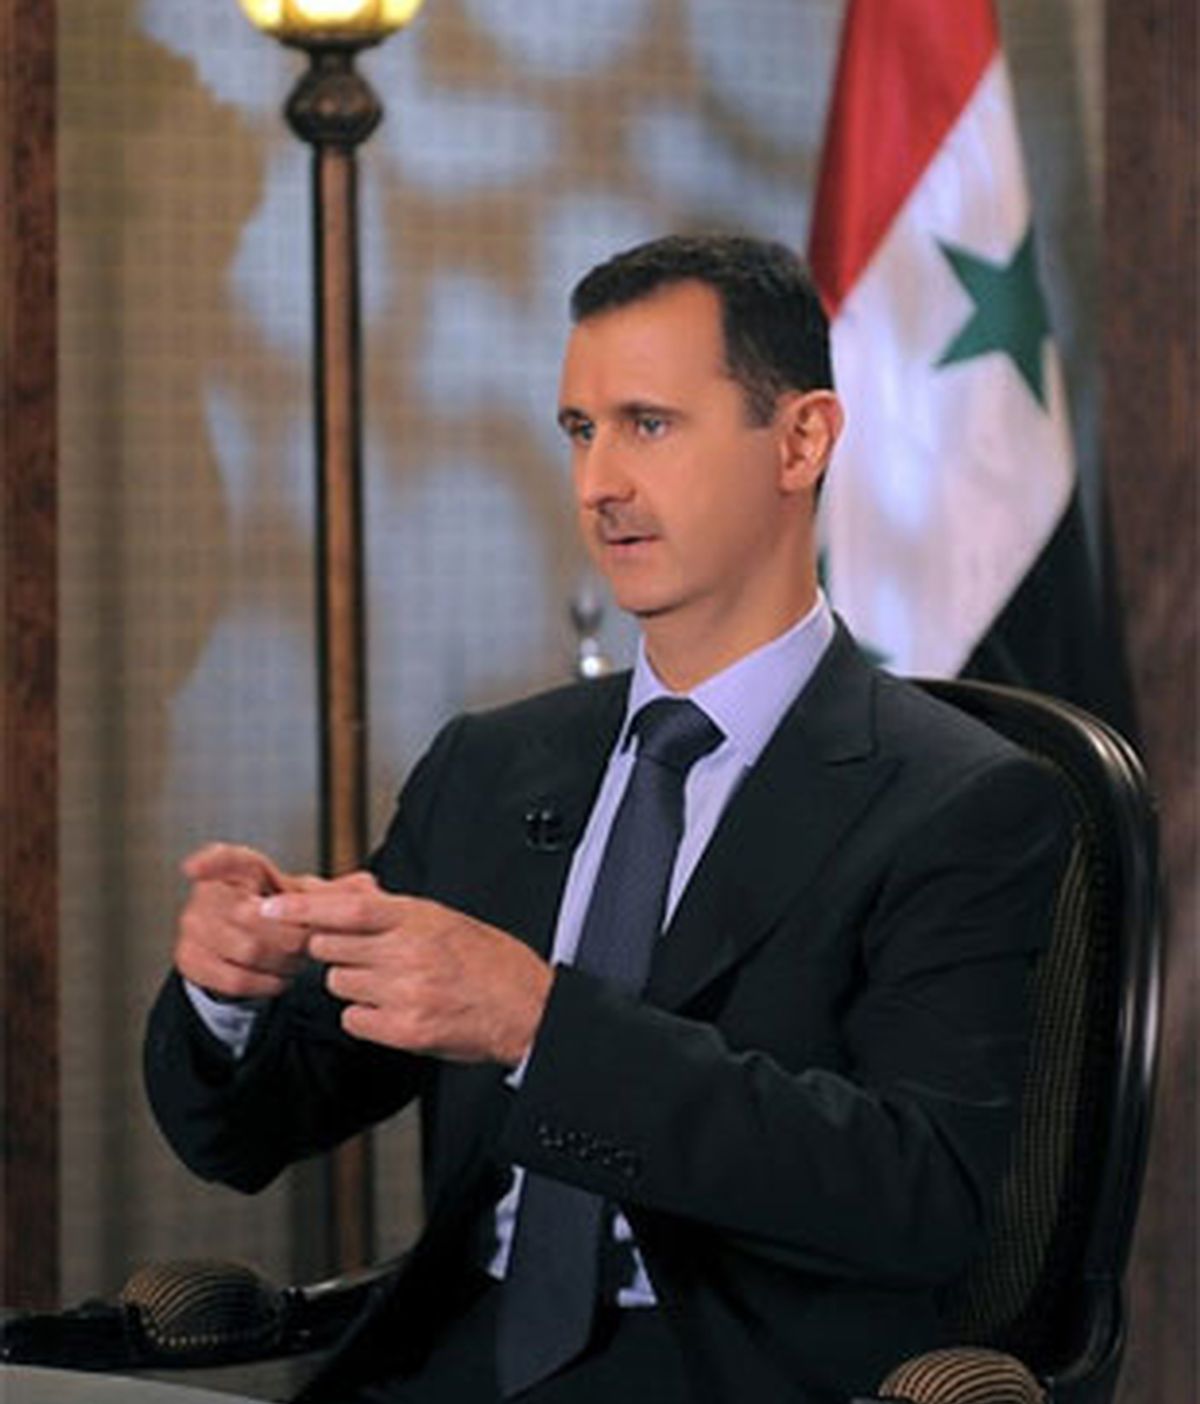 El presidente sirio se niega a abandonar el poder. Video: ATLAS